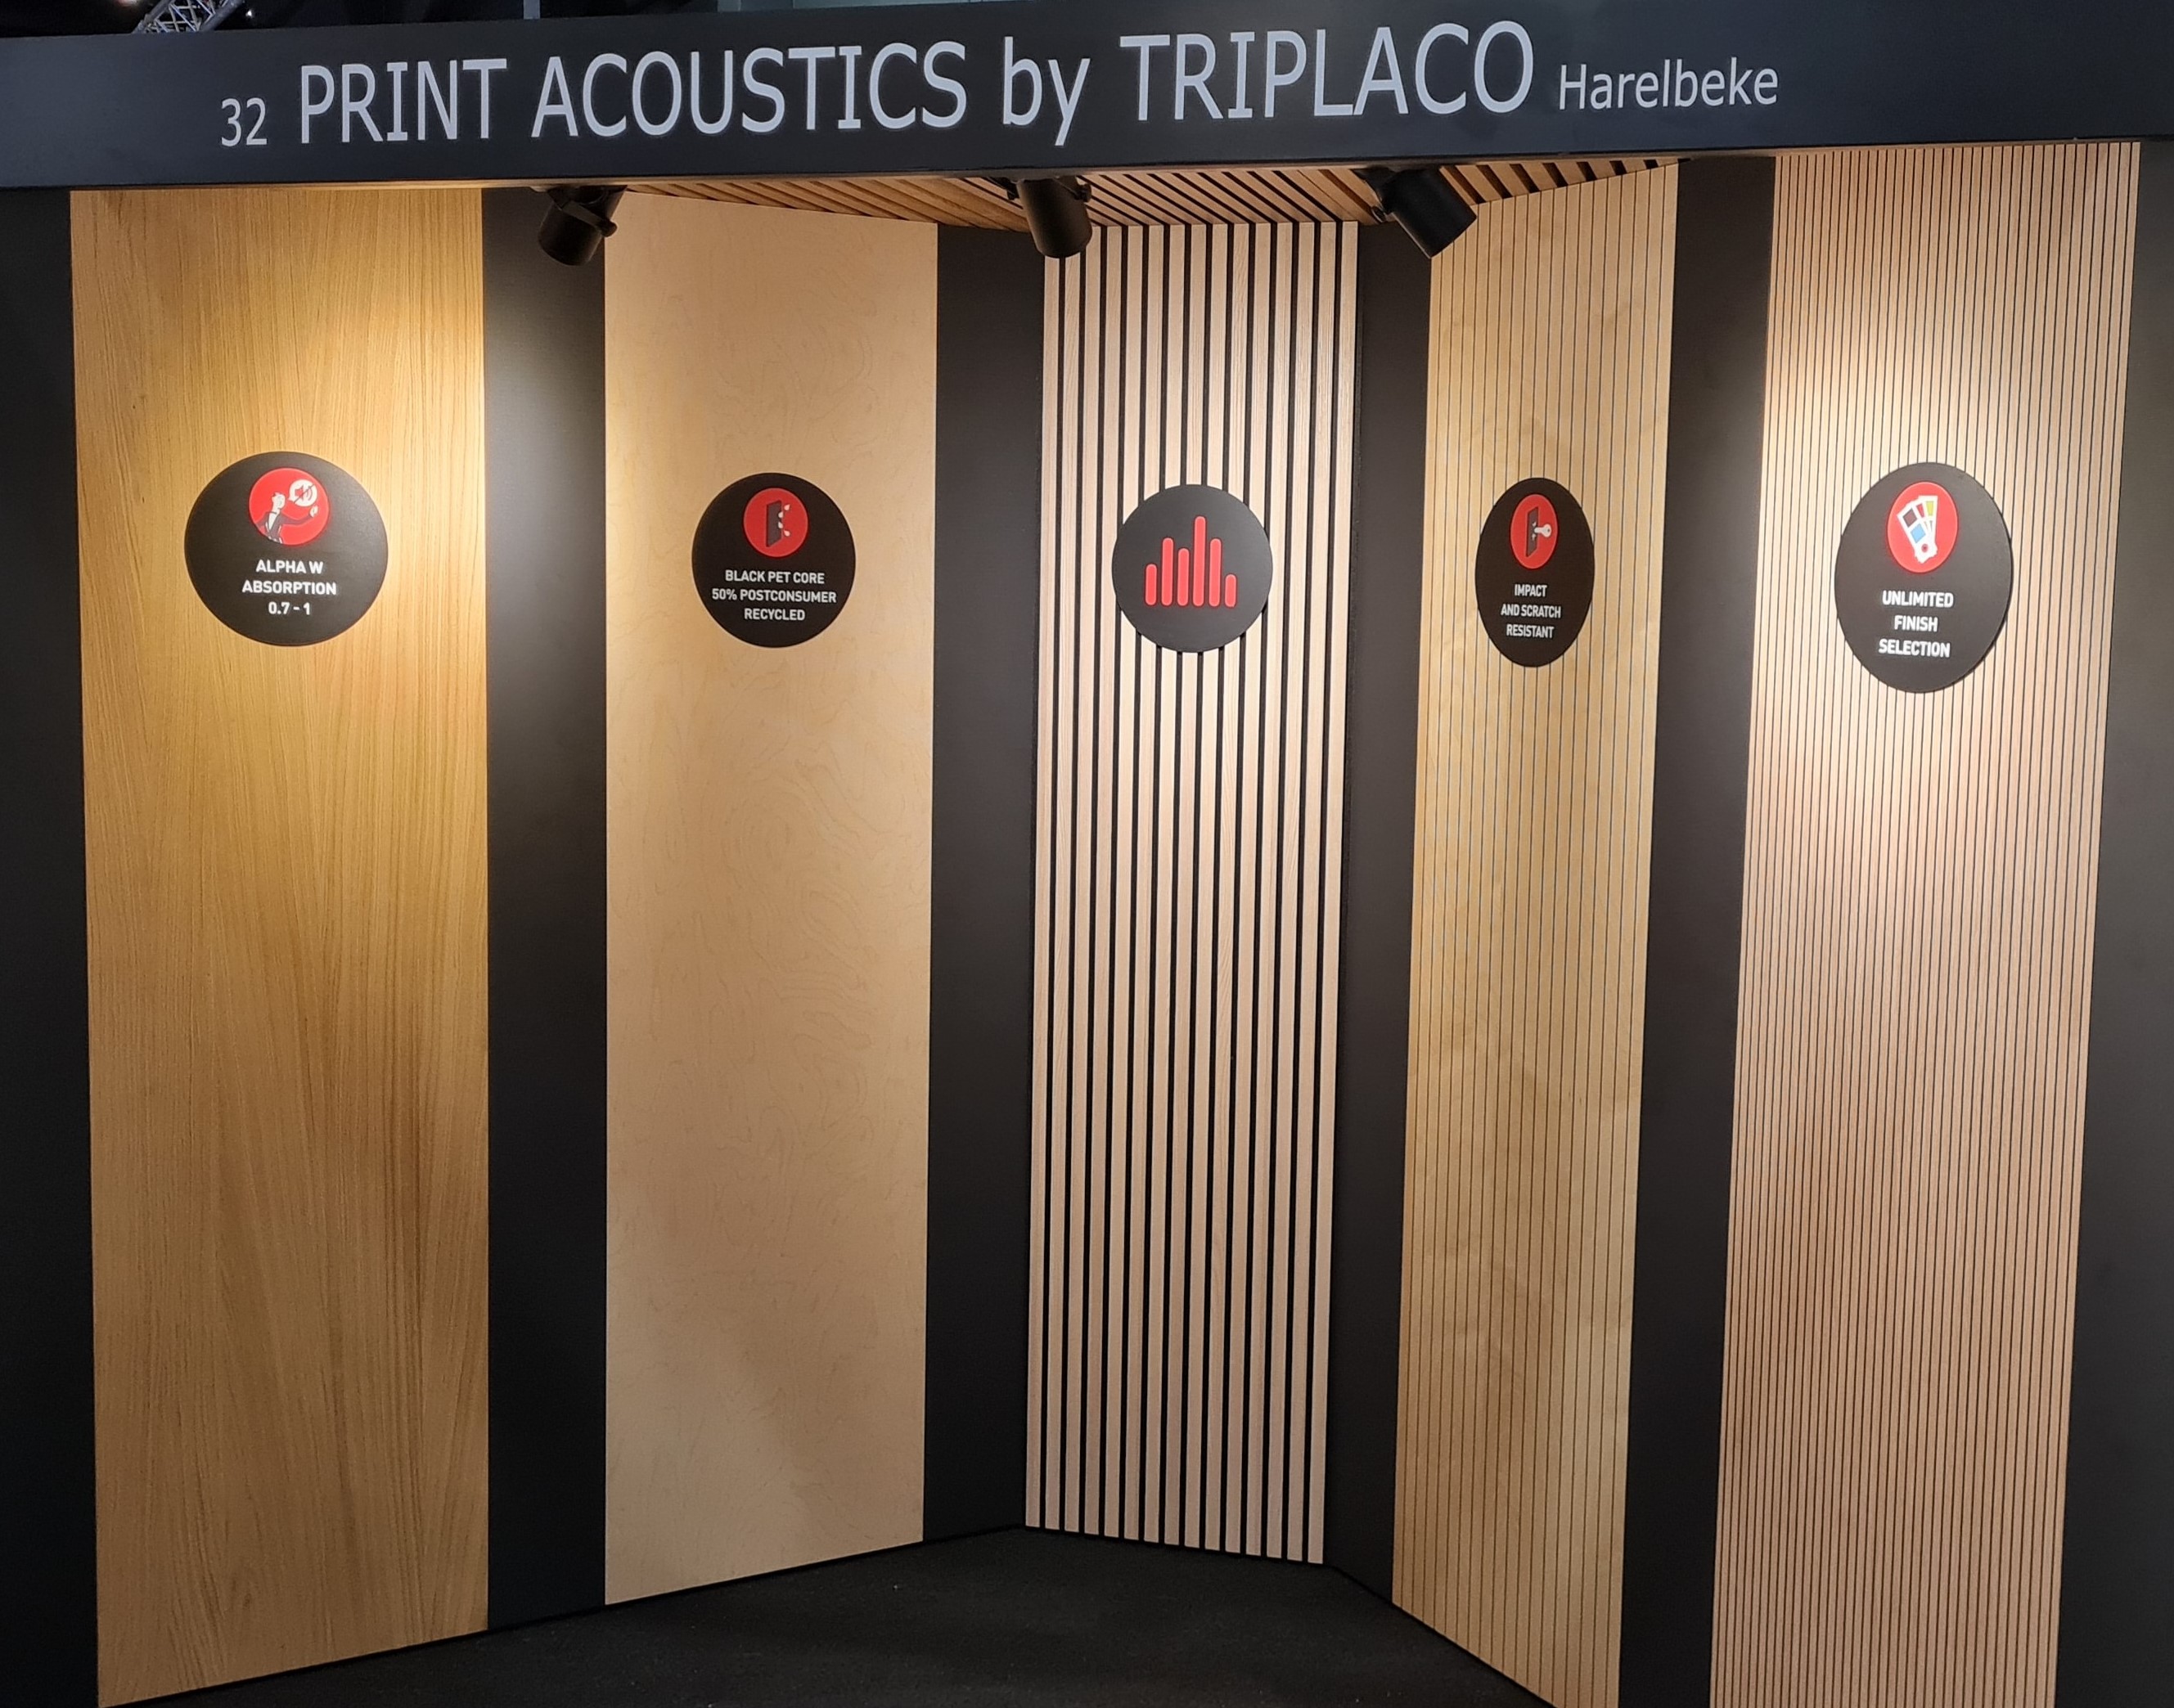 <p>Kristoff Ver Eecke , Director Print Acoustics en Woodcoustics by Triplaco</p><p><strong>“We zijn begonnen om onze naamsbekendheid en producten in Nederland te promoten bij architecten en interieurbouwers”</strong></p>